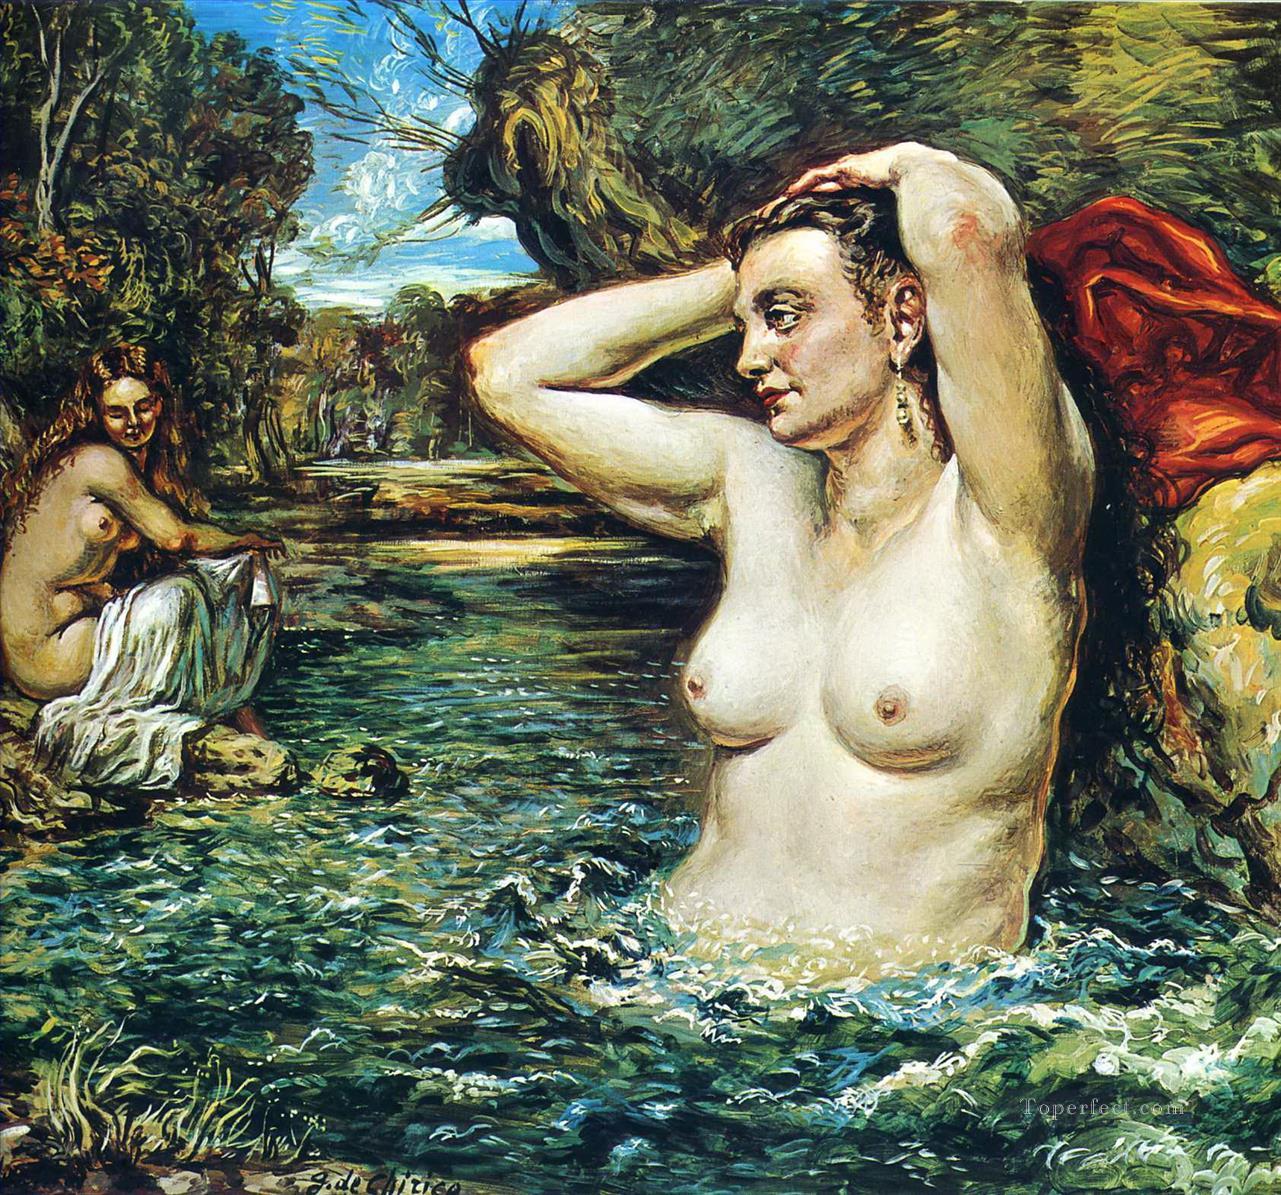 入浴するニンフ 1955 ジョルジョ・デ・キリコ 印象派のヌード油絵